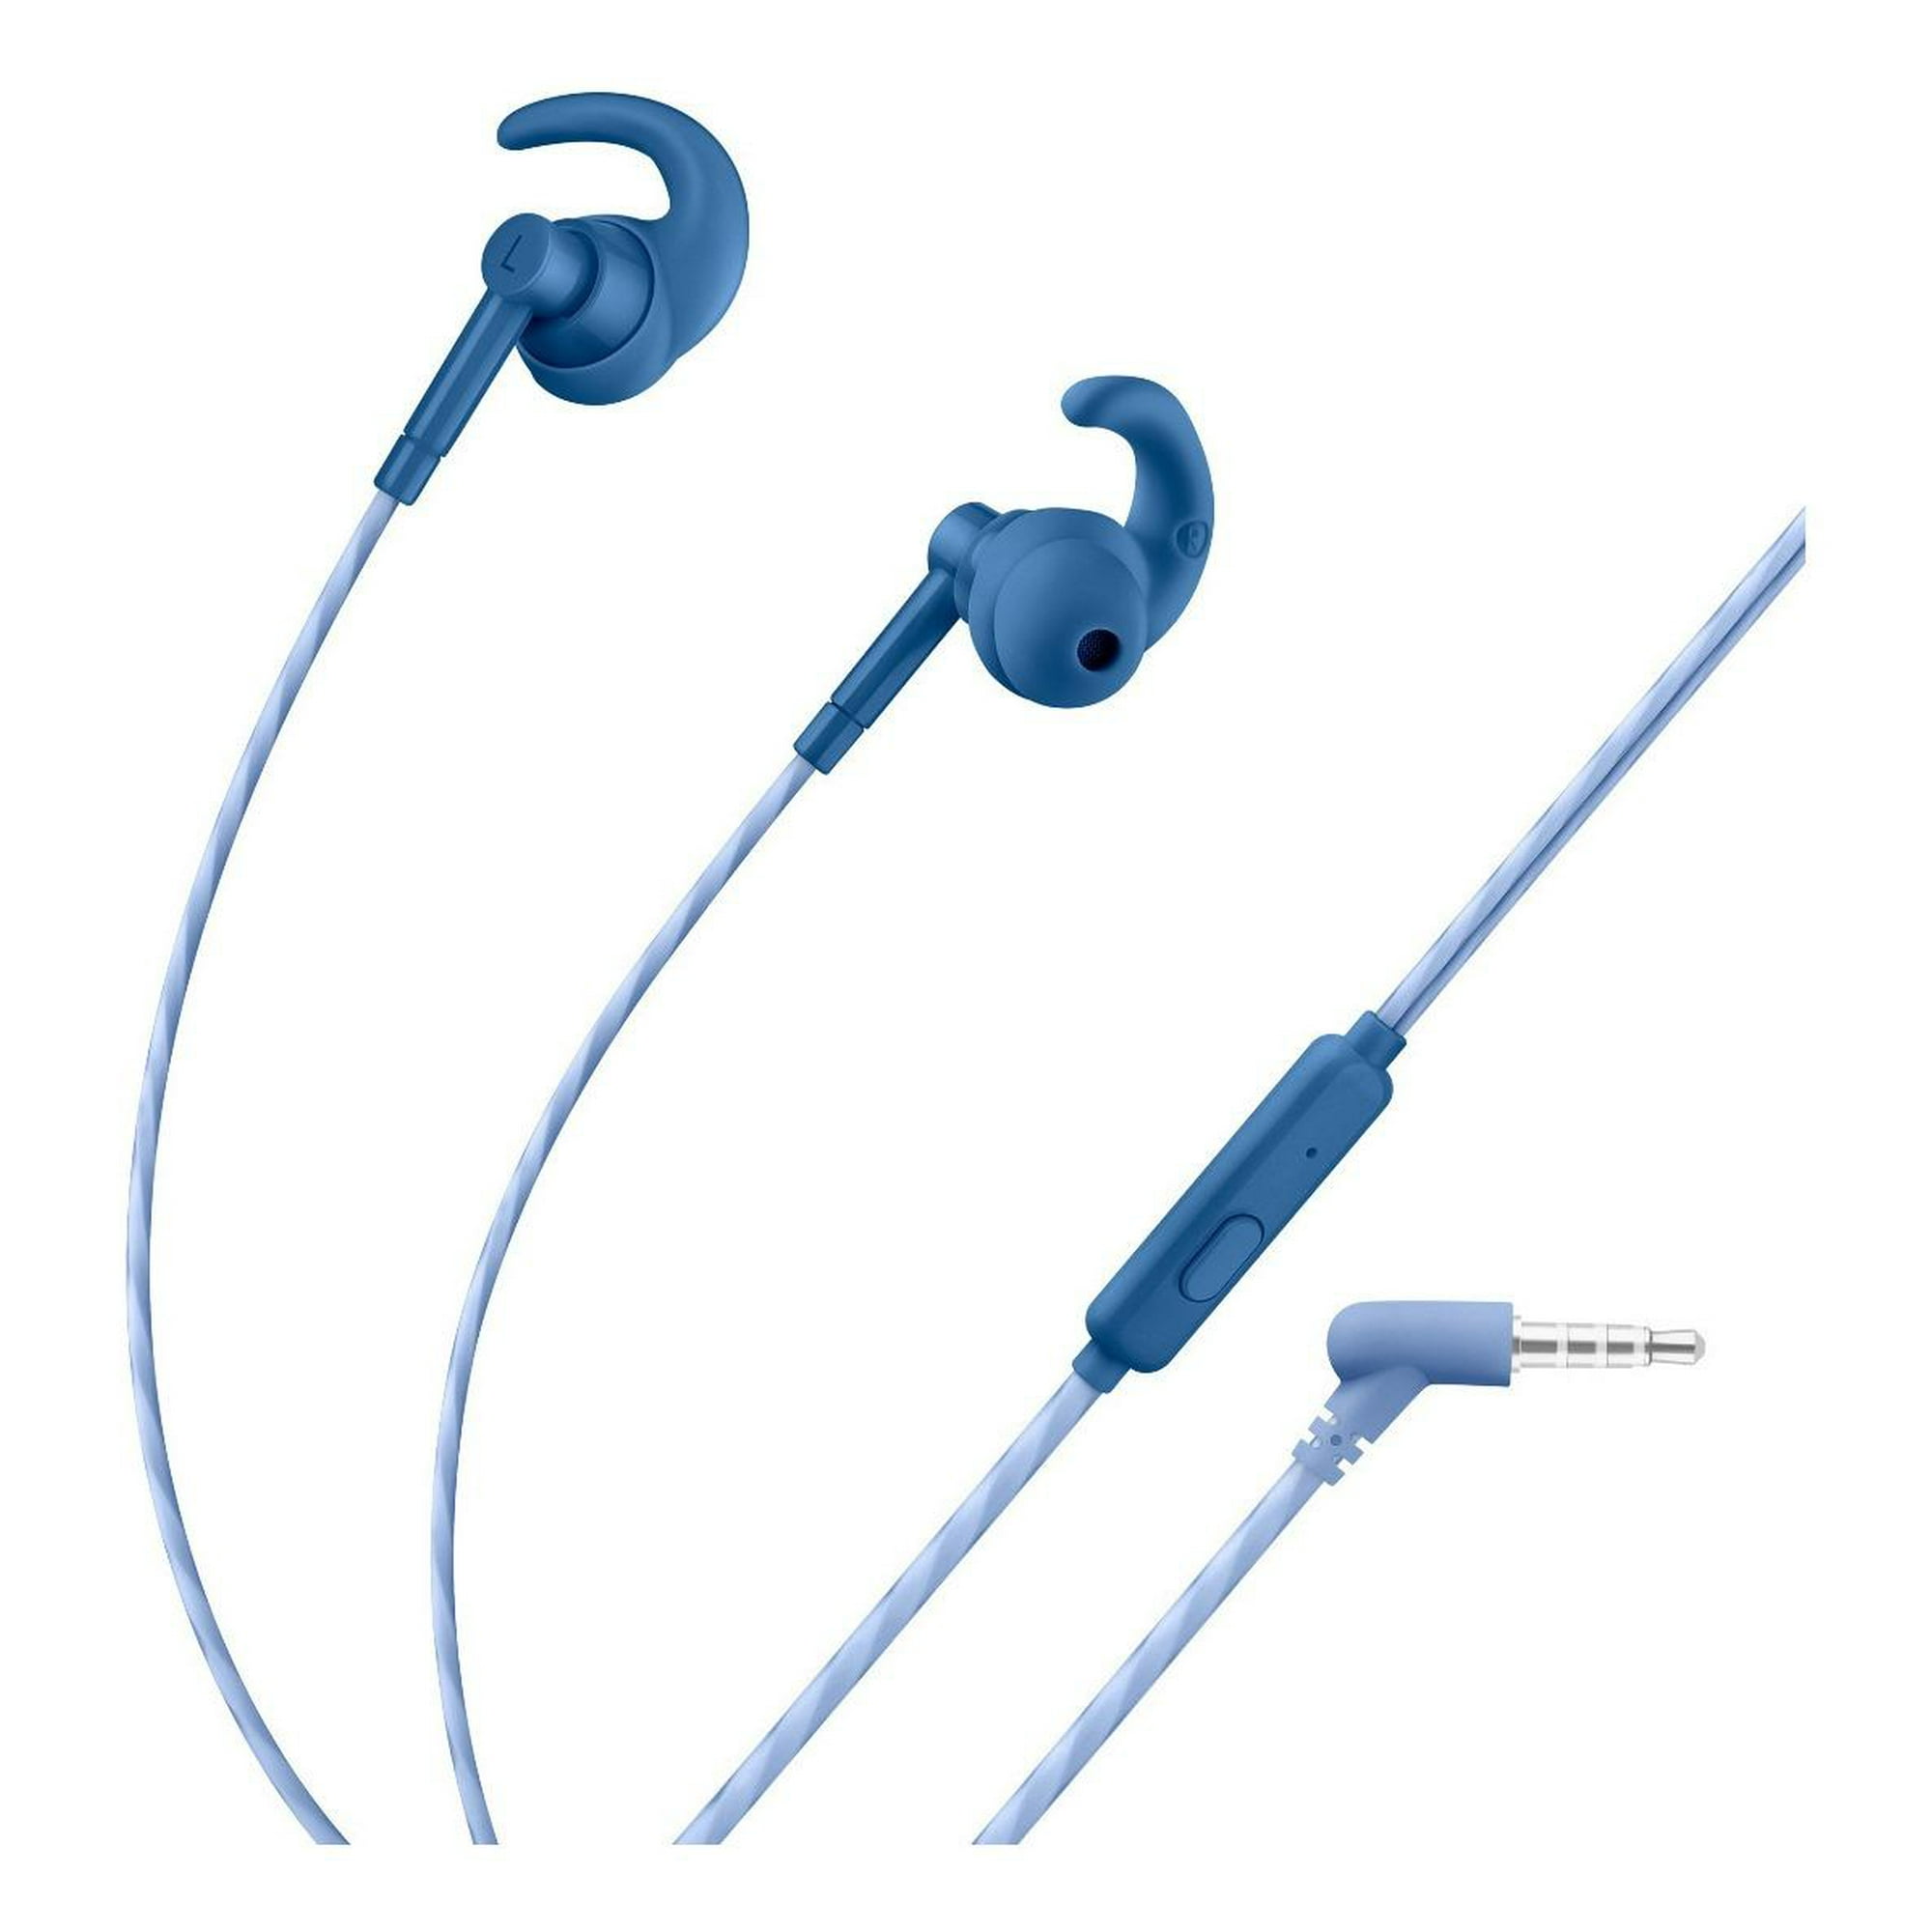 Audífonos Con Cable Delgado Auriculares In Ear Steren